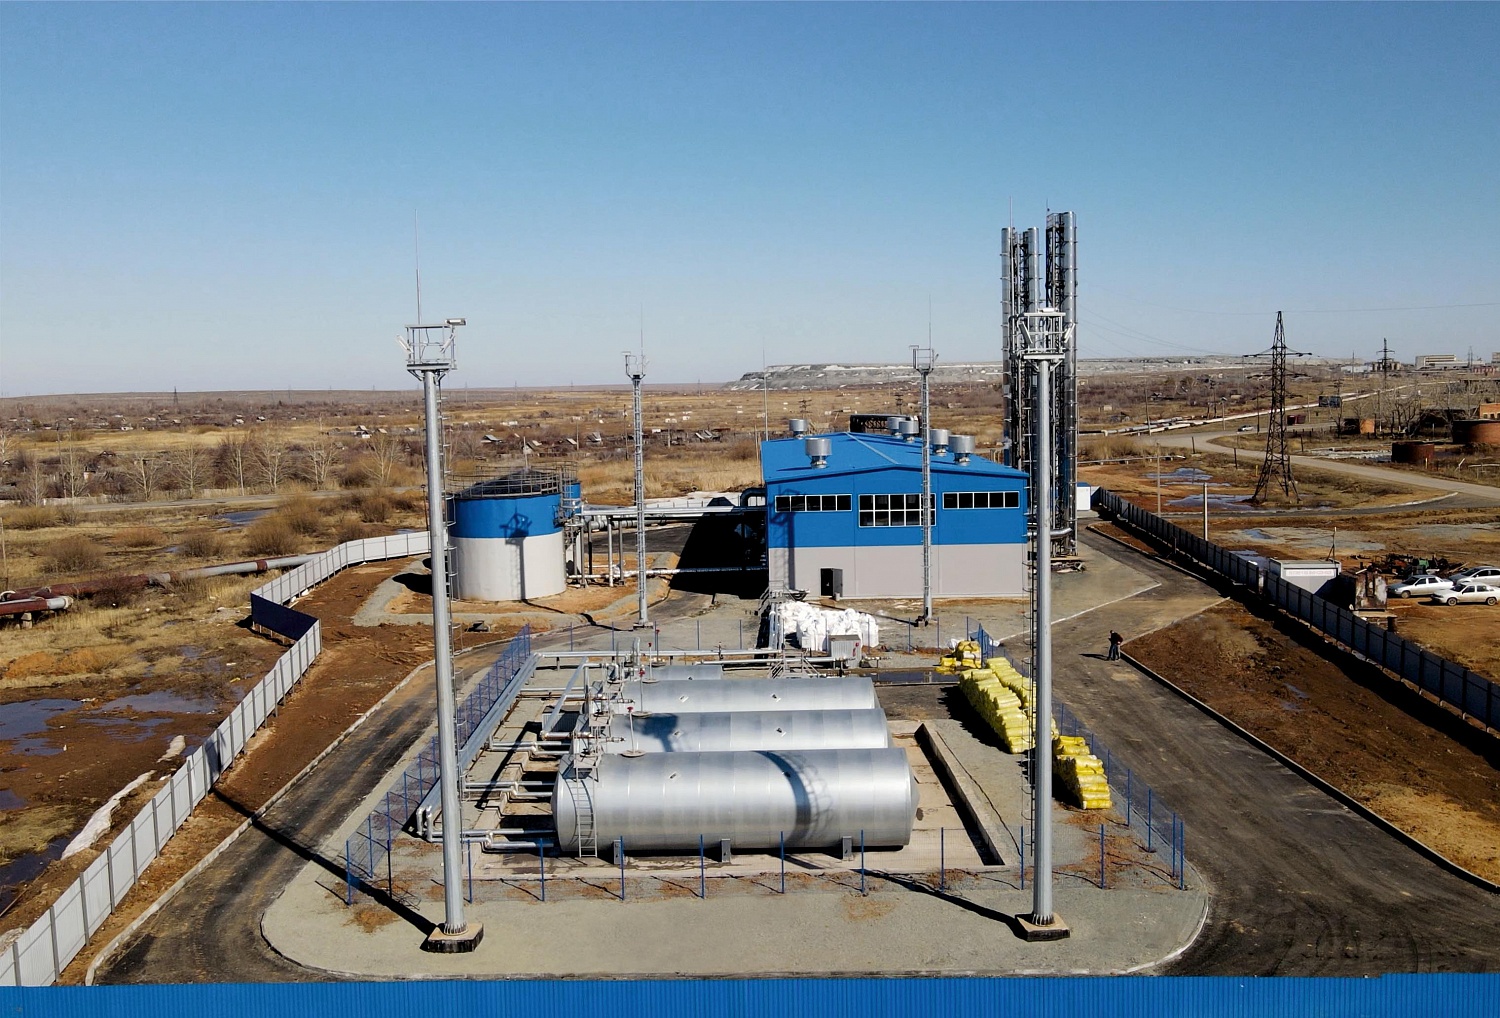 Водогрейная котельная 74 МВт, г.Ясный, Оренбургская область